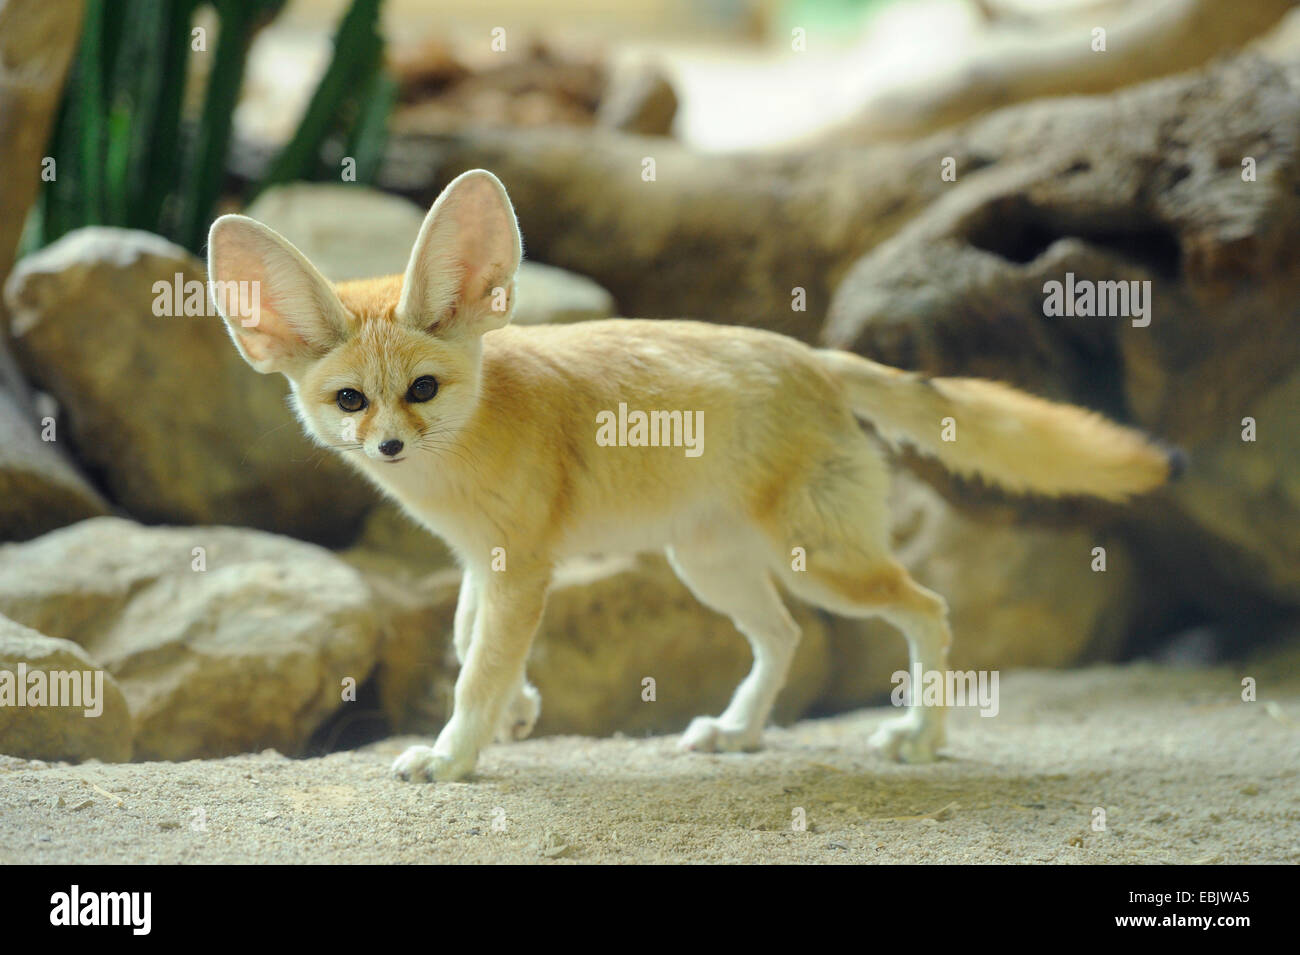 fennec fox (Fennecus zerda, Vulpes zerda), in vivarium Stock Photo